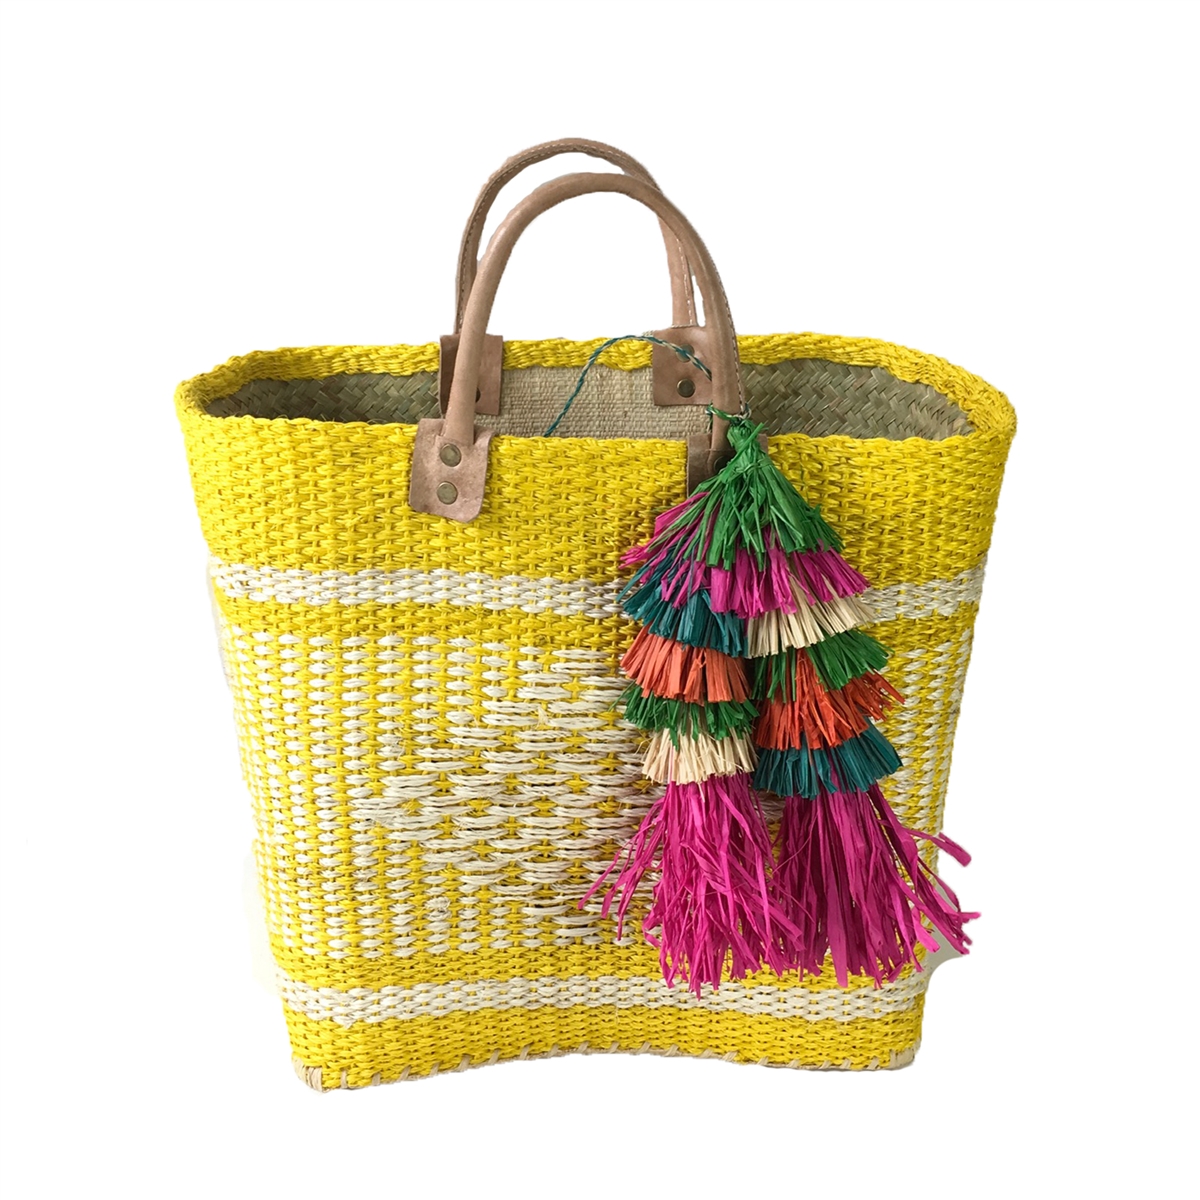 Designer beach bag, Cabas Sun, yellow striped - 1789 CALA - Salt and Sun